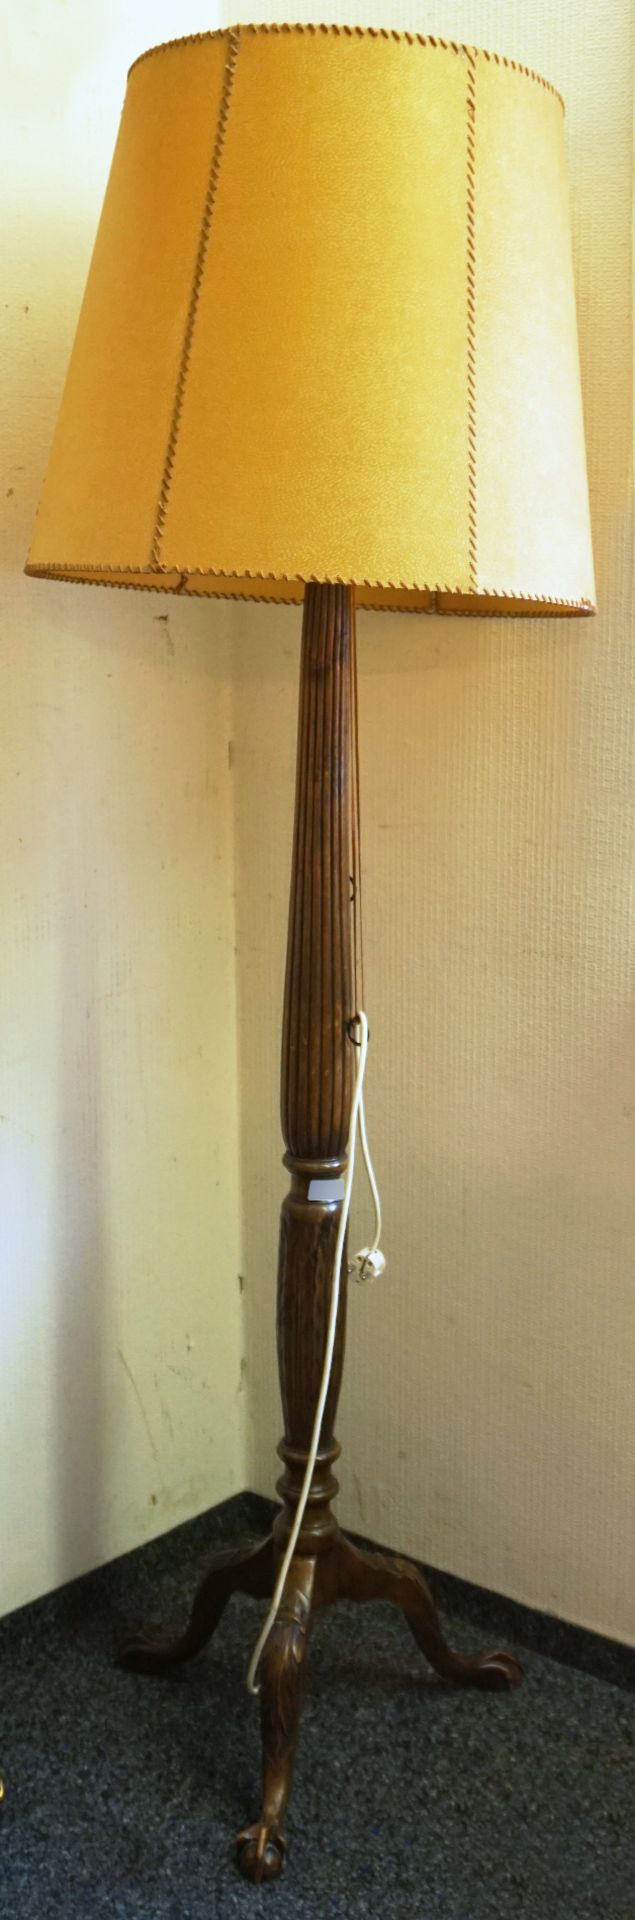 1 Stehlampe Eiche beschnitzt mit Klauenfüßen 2-flammig, Schirm Pergament, ca. H 184cm, ber./Asp.